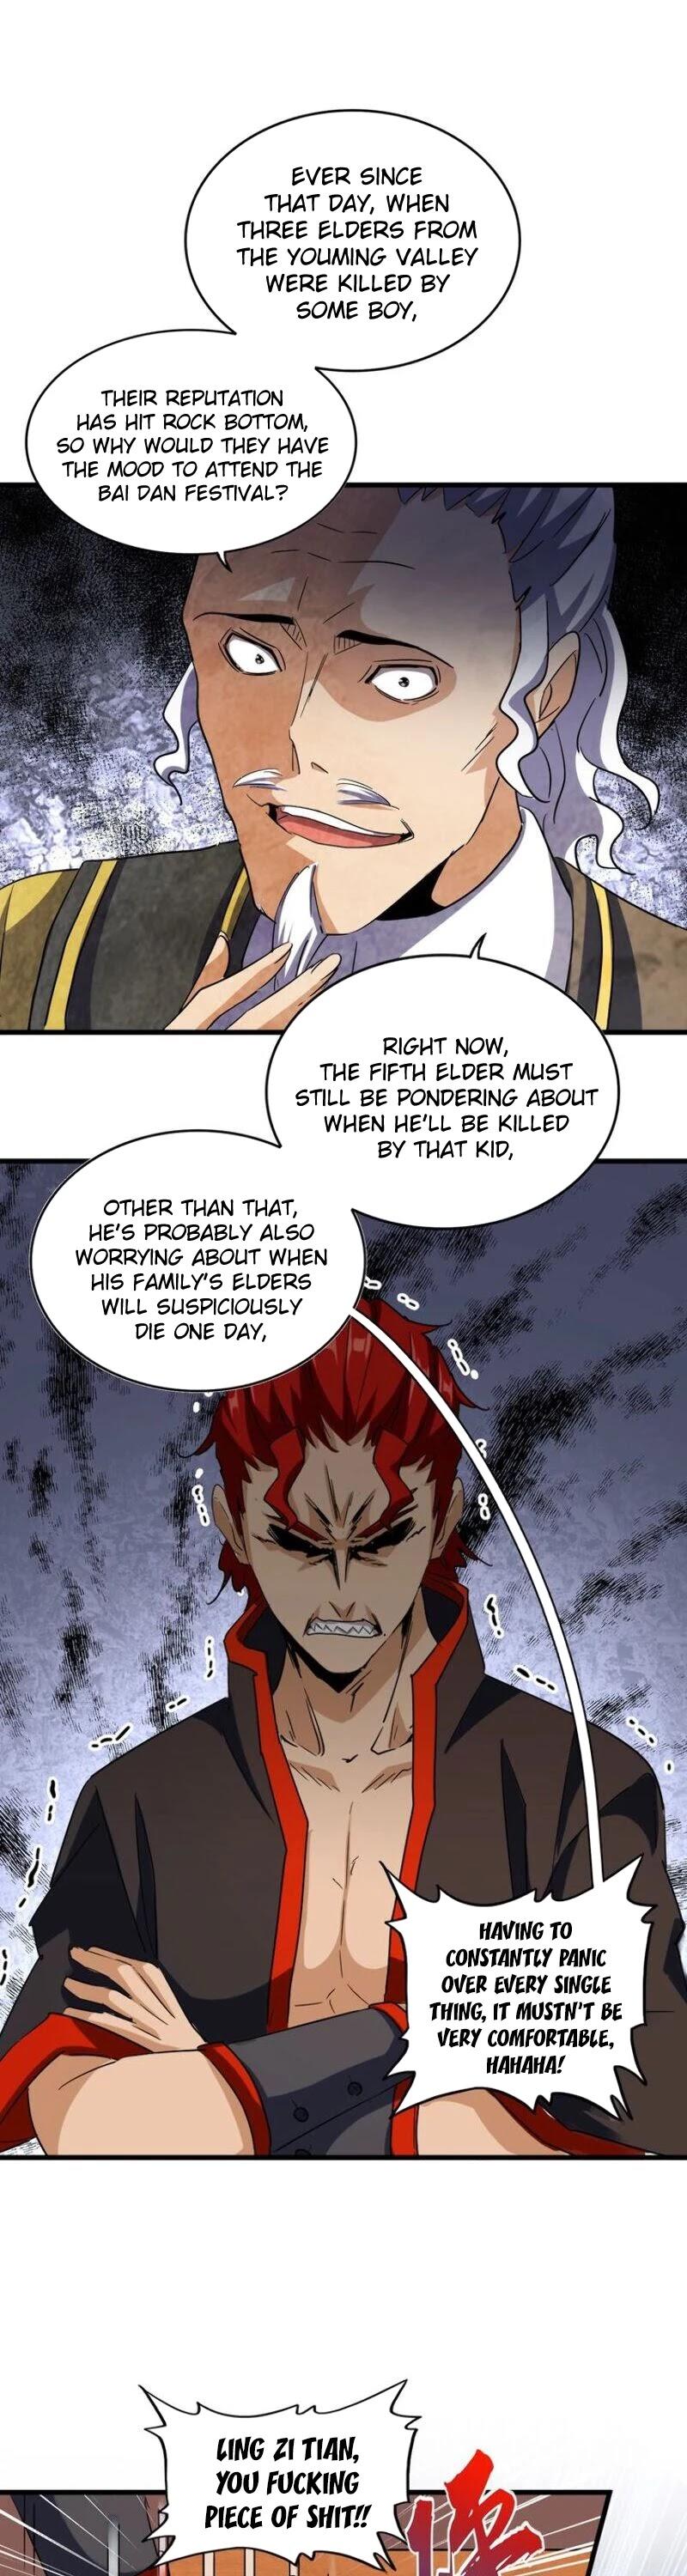 Magic Emperor Chapter 116 page 6 - Mangakakalot